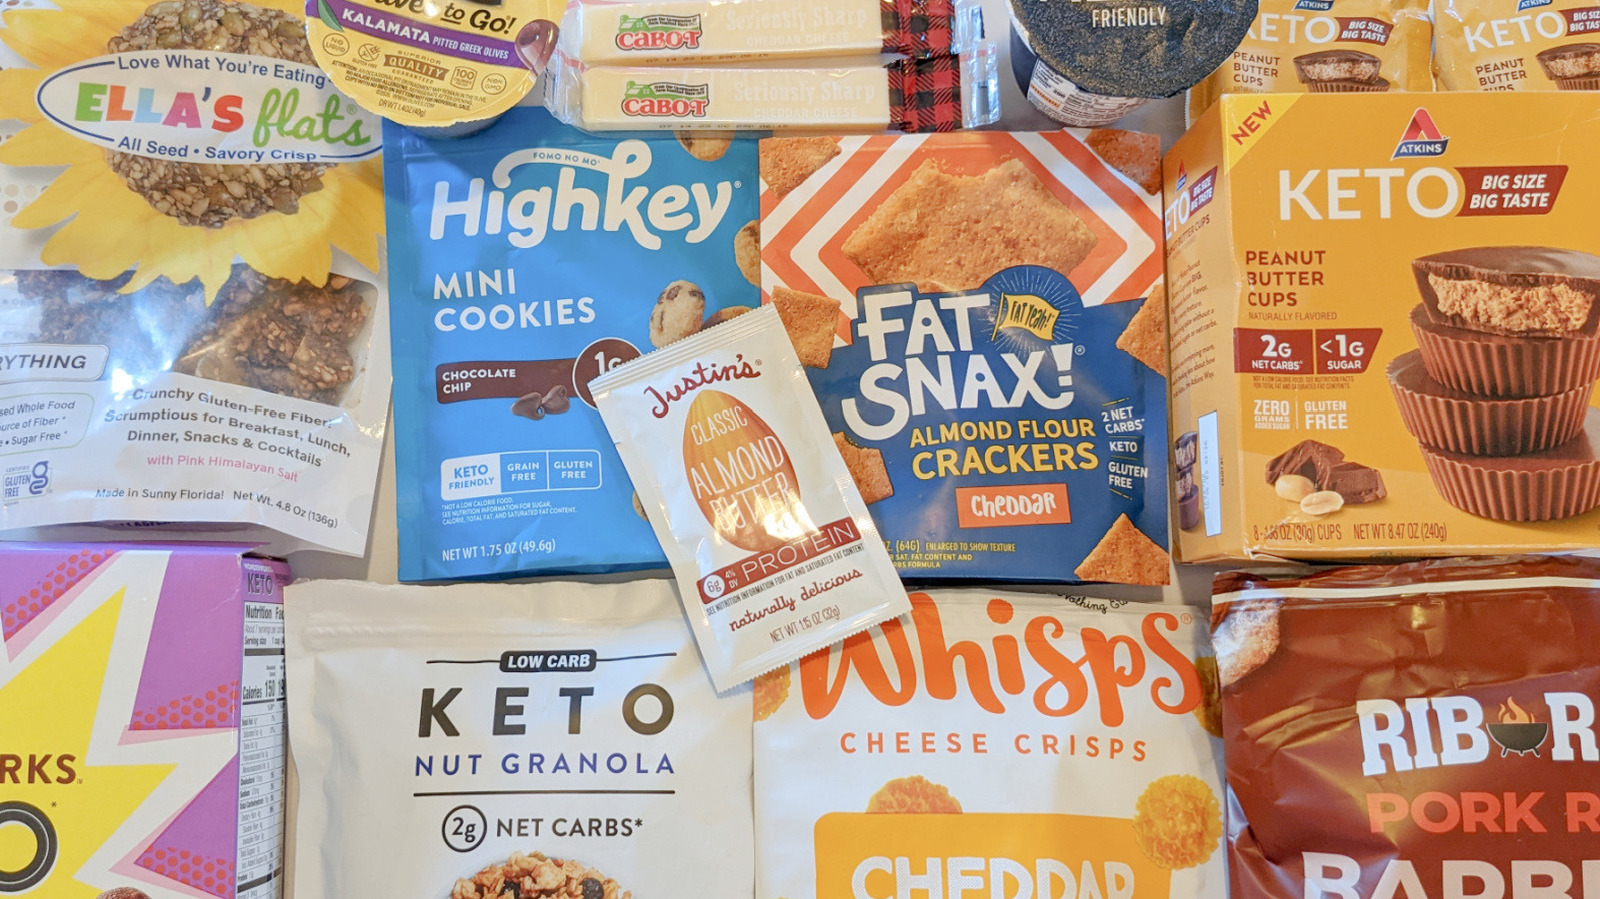 KETO Snack Box: Best Keto Sampler Snacks and Treats - Low